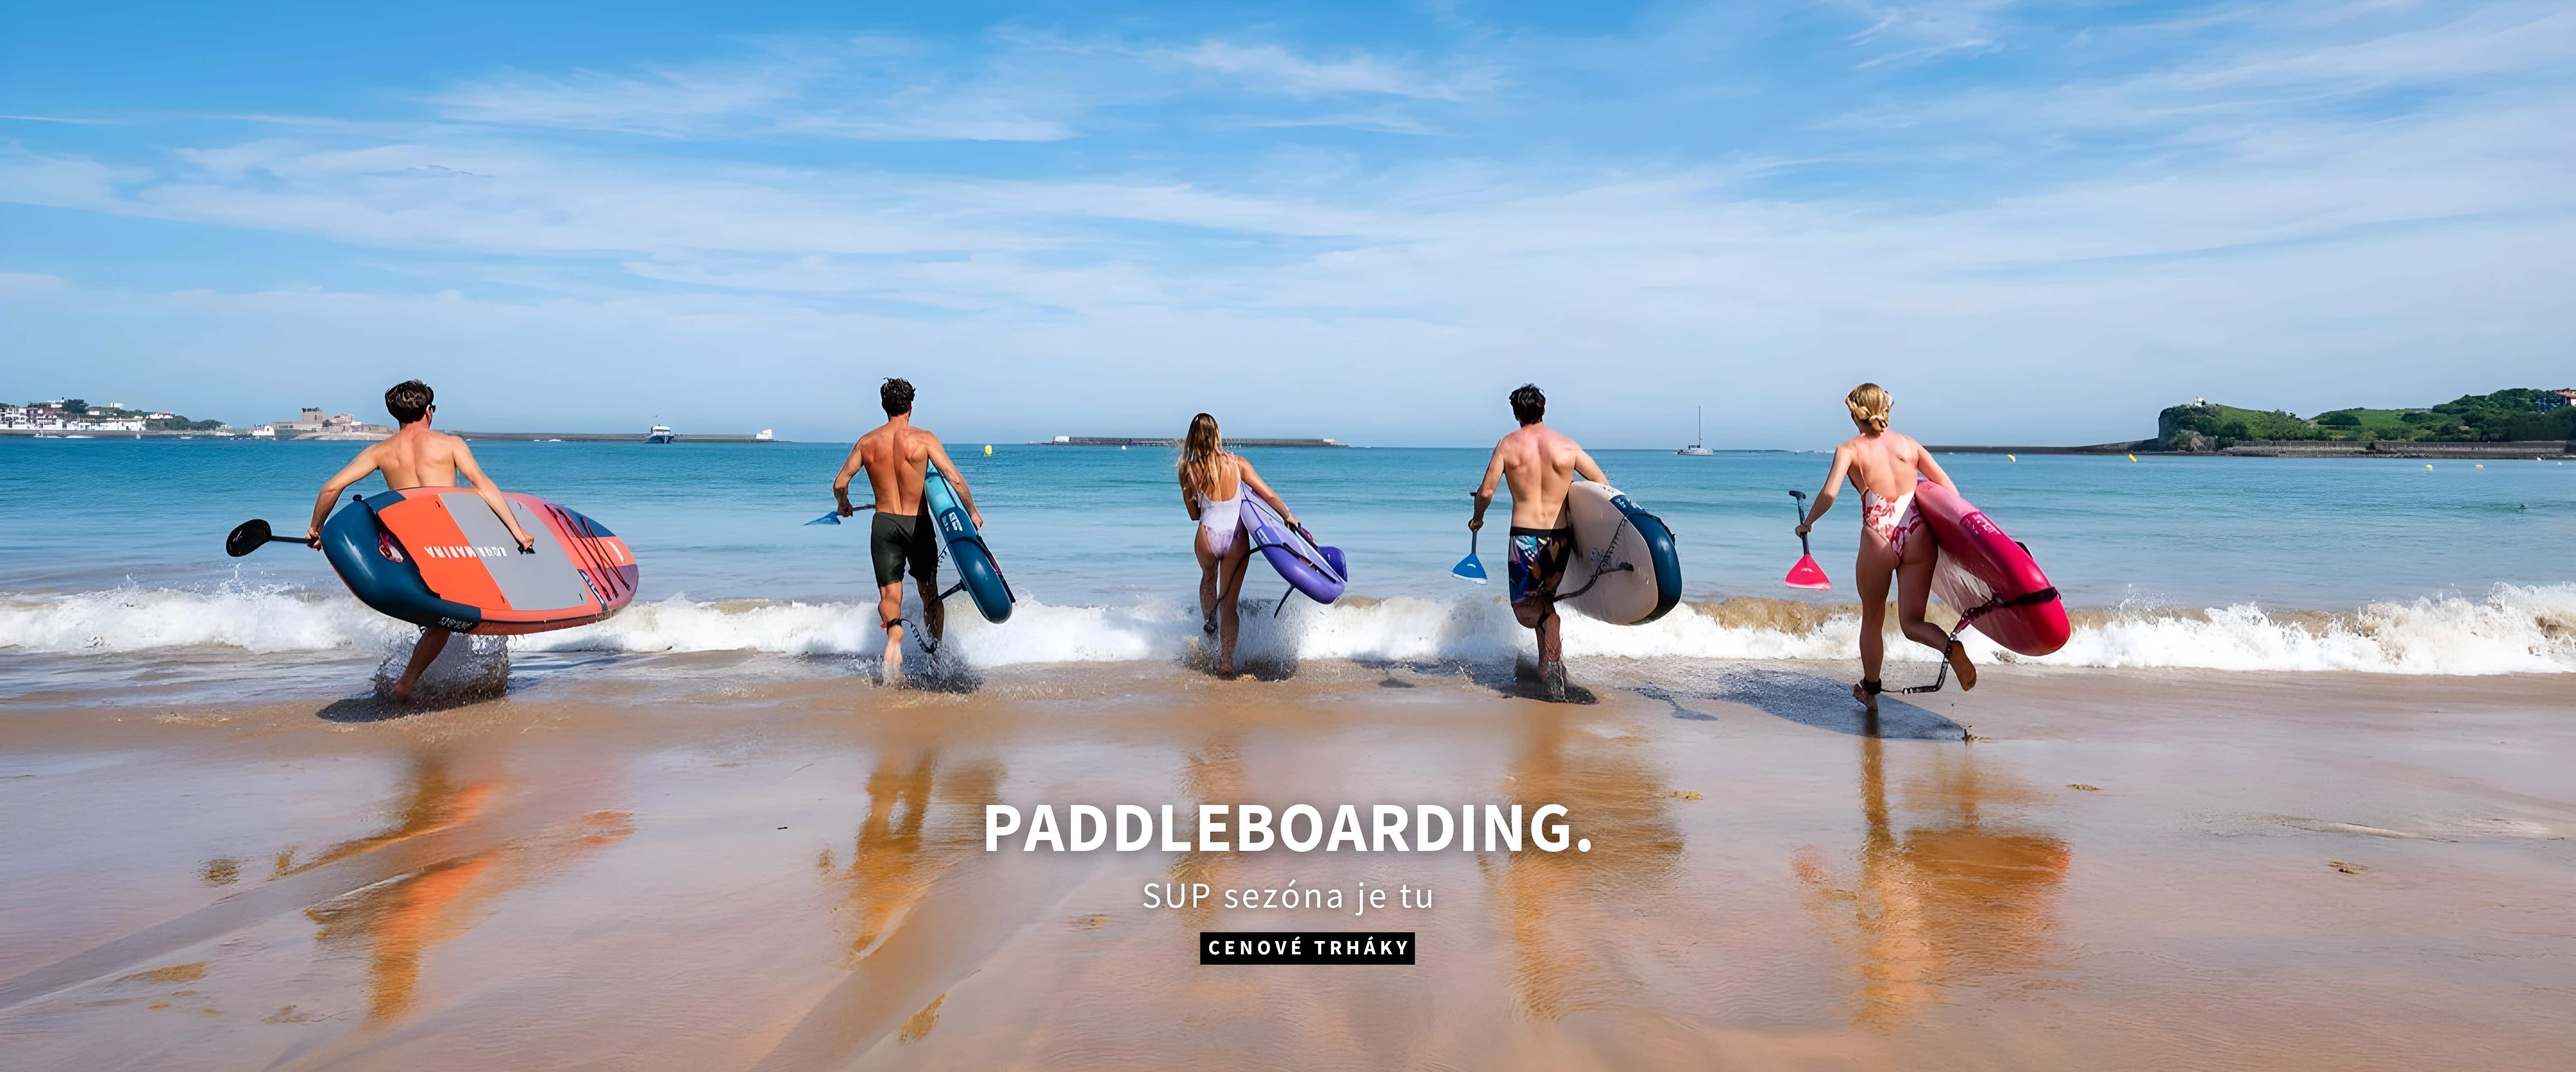 paddleboardy | desktop